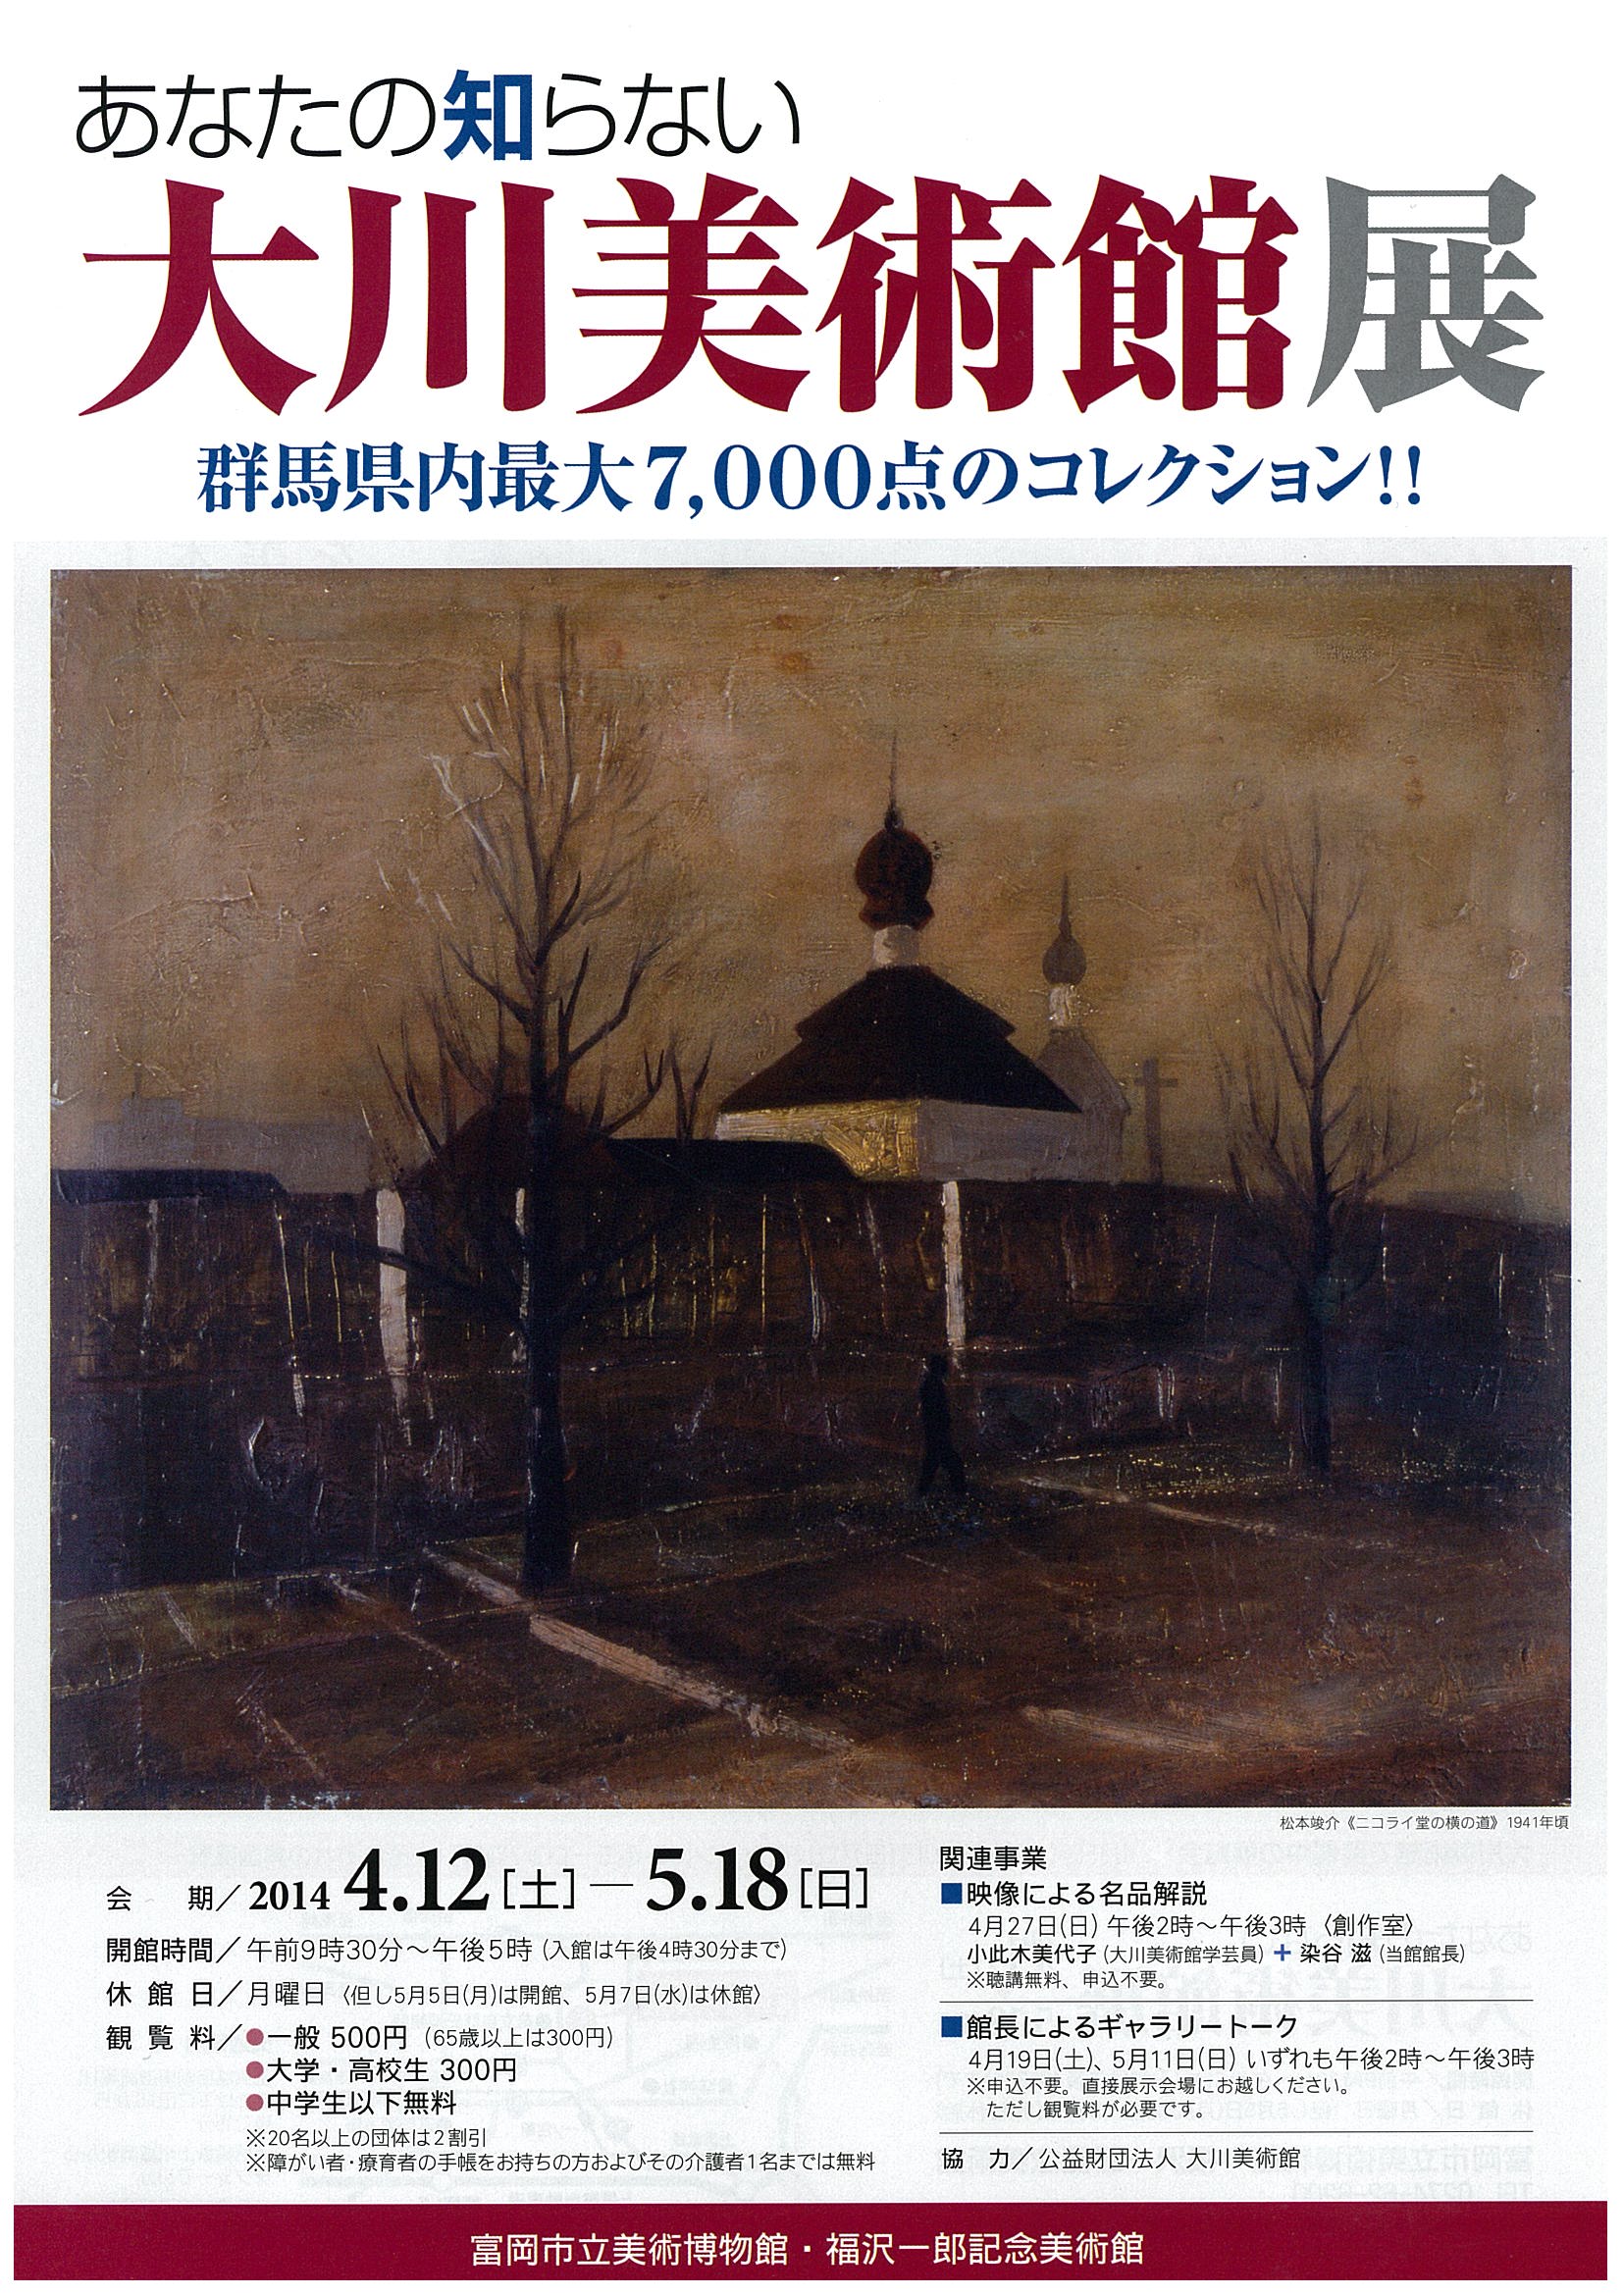 富岡市立美術博物館・福沢一郎記念美術館にて<br>あなたの知らない「大川美術館展」が開催されます。